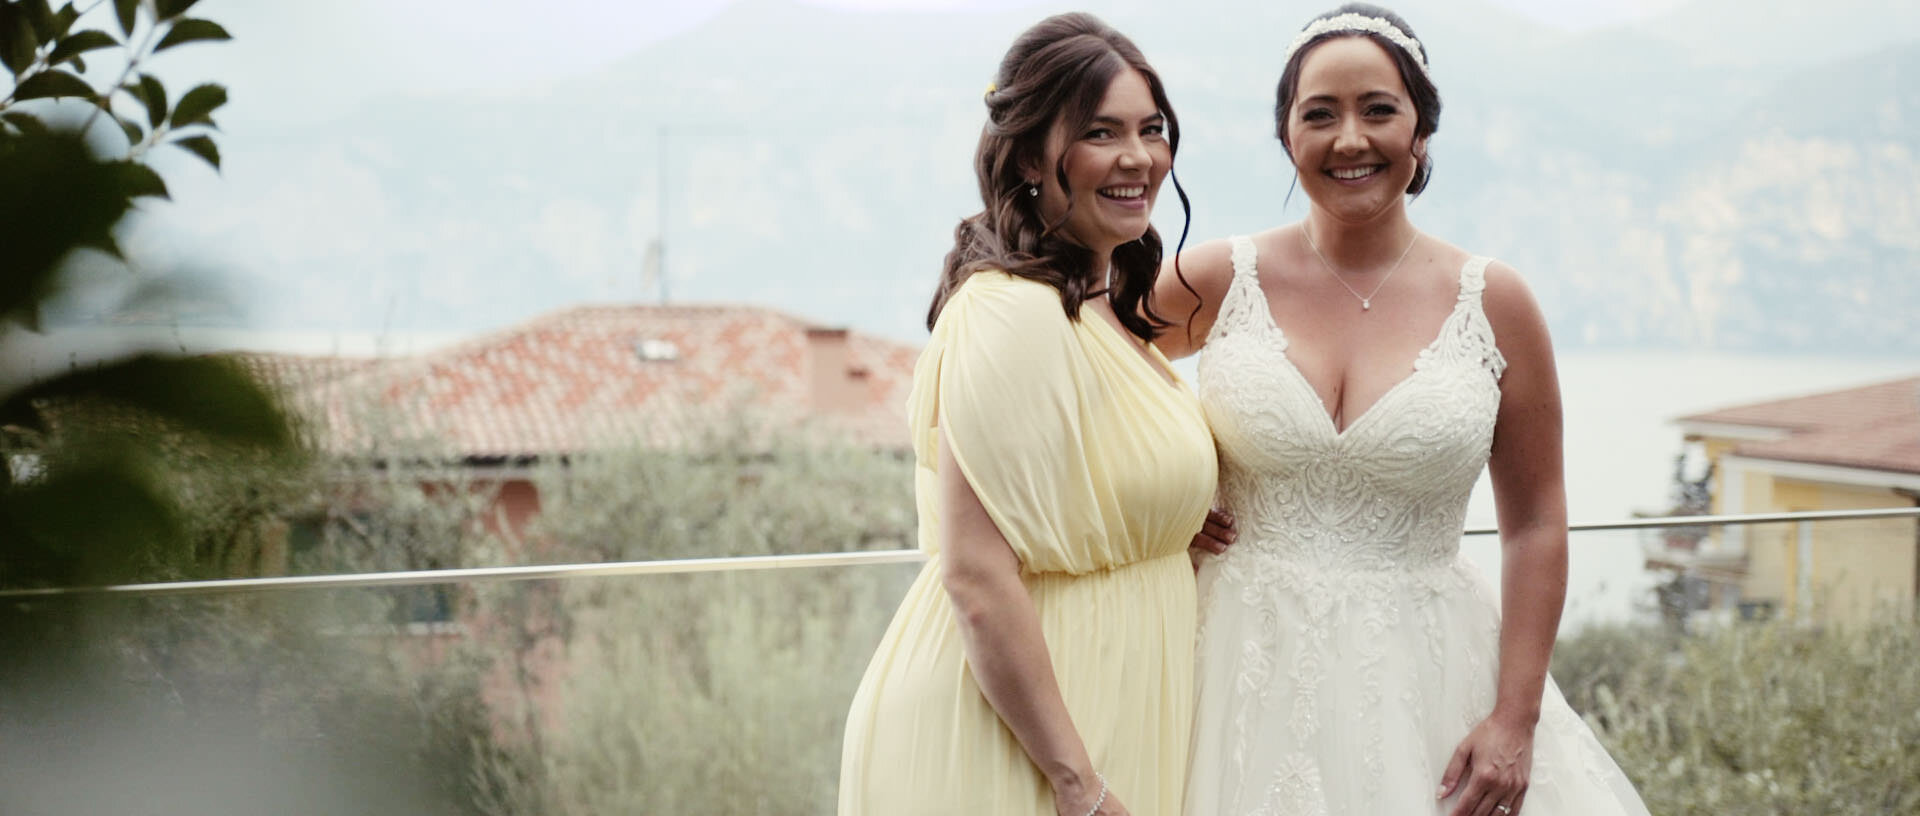 Elisa & Gavin Destination Wedding Film Lake Garda Malcesine 5.jpg